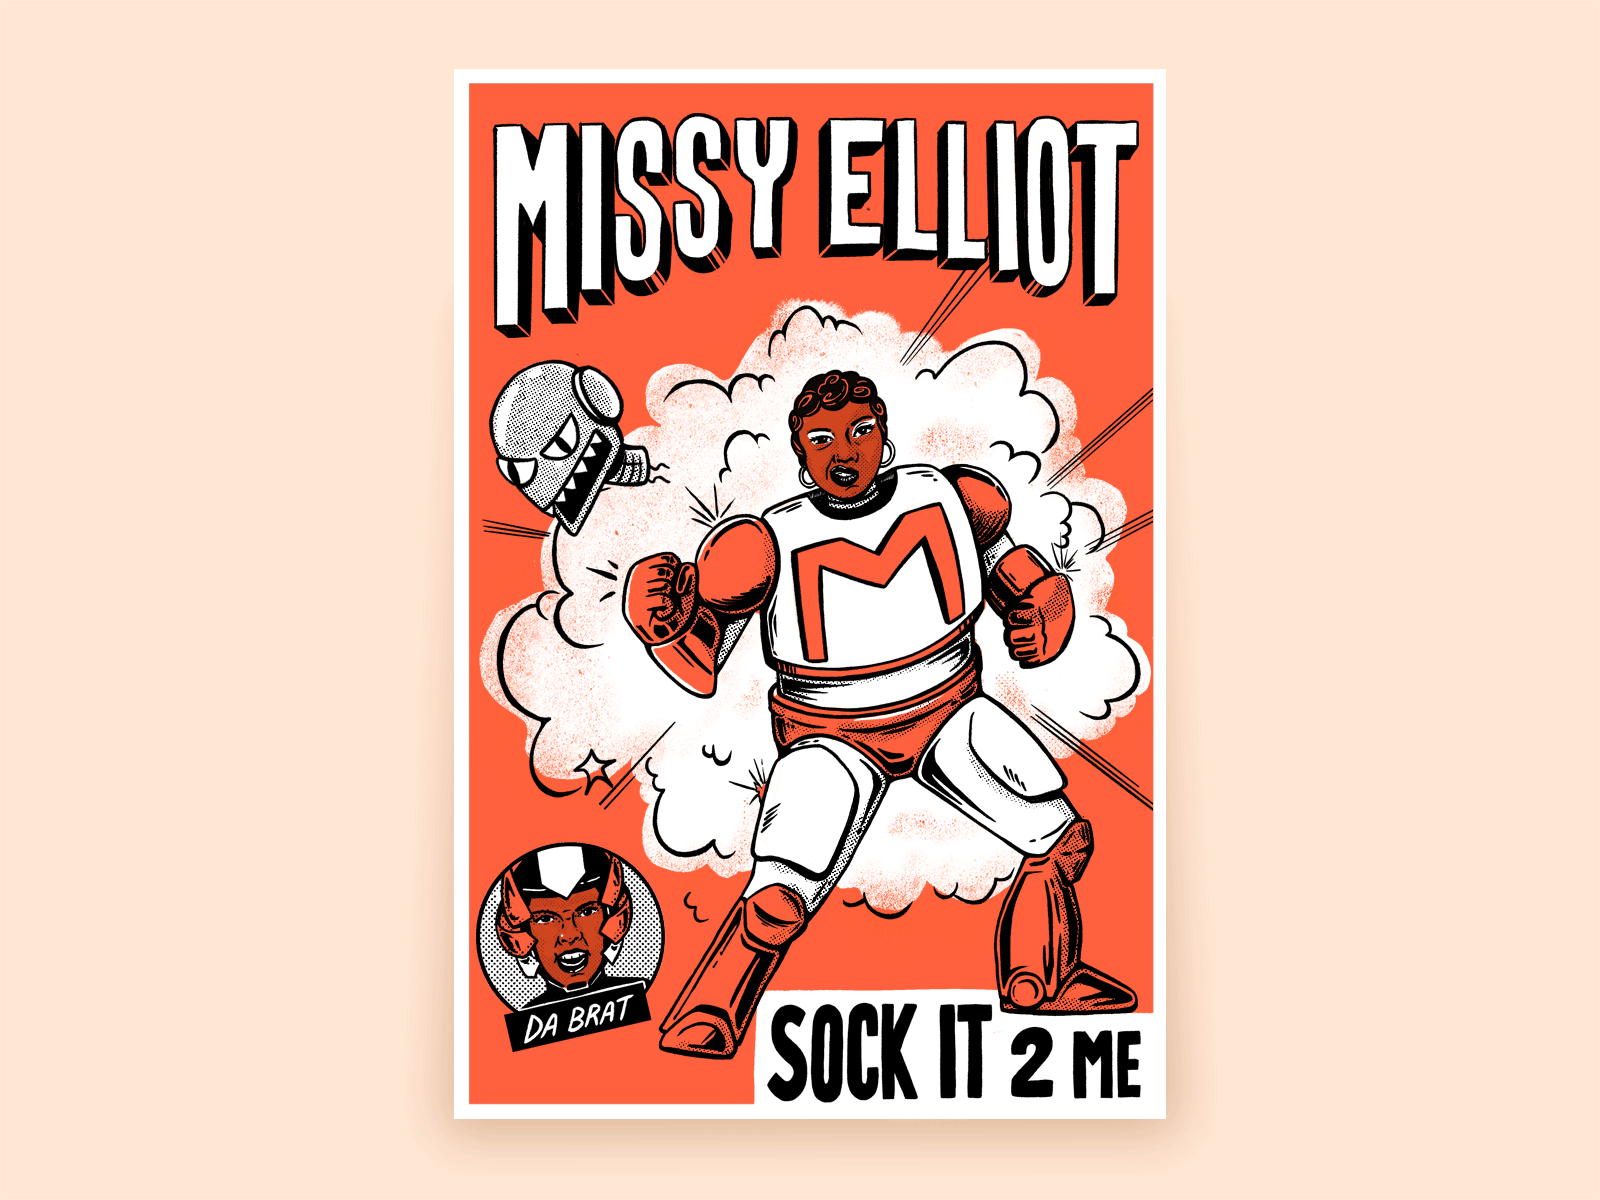 Sock It 2 Me - Missy Elliot